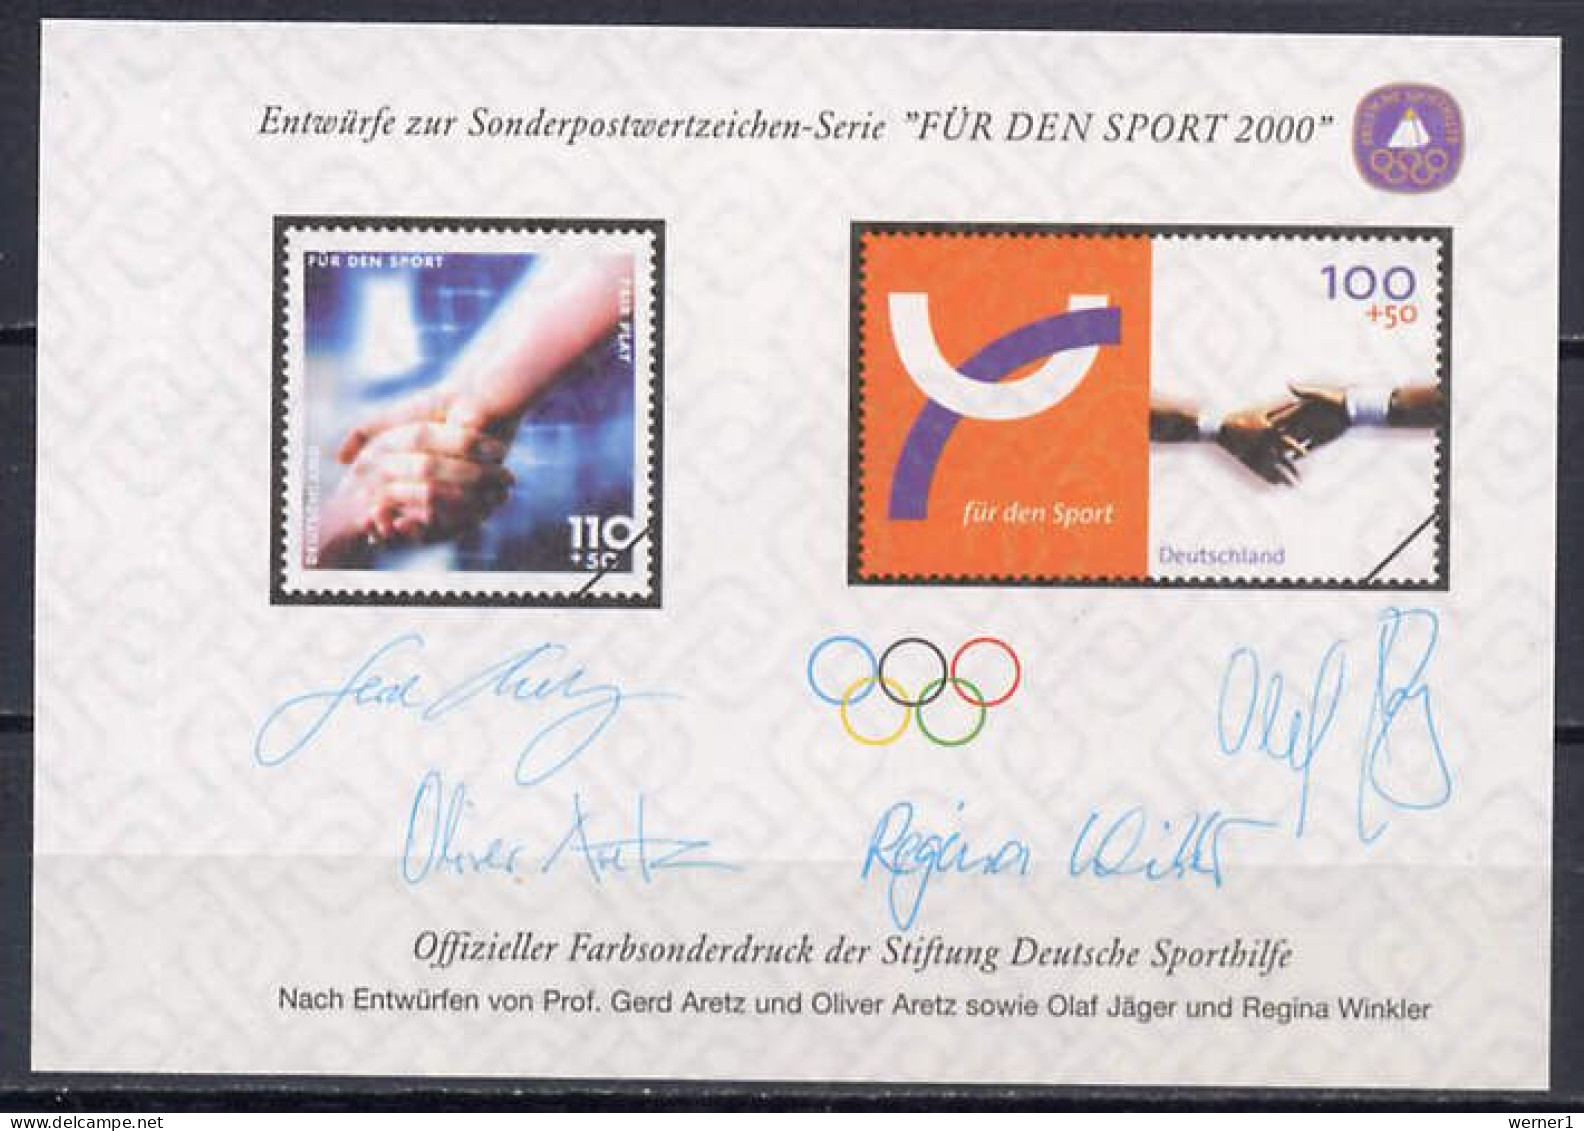 Germany 2000 Olympic Games Sydney Vignette MNH - Verano 2000: Sydney